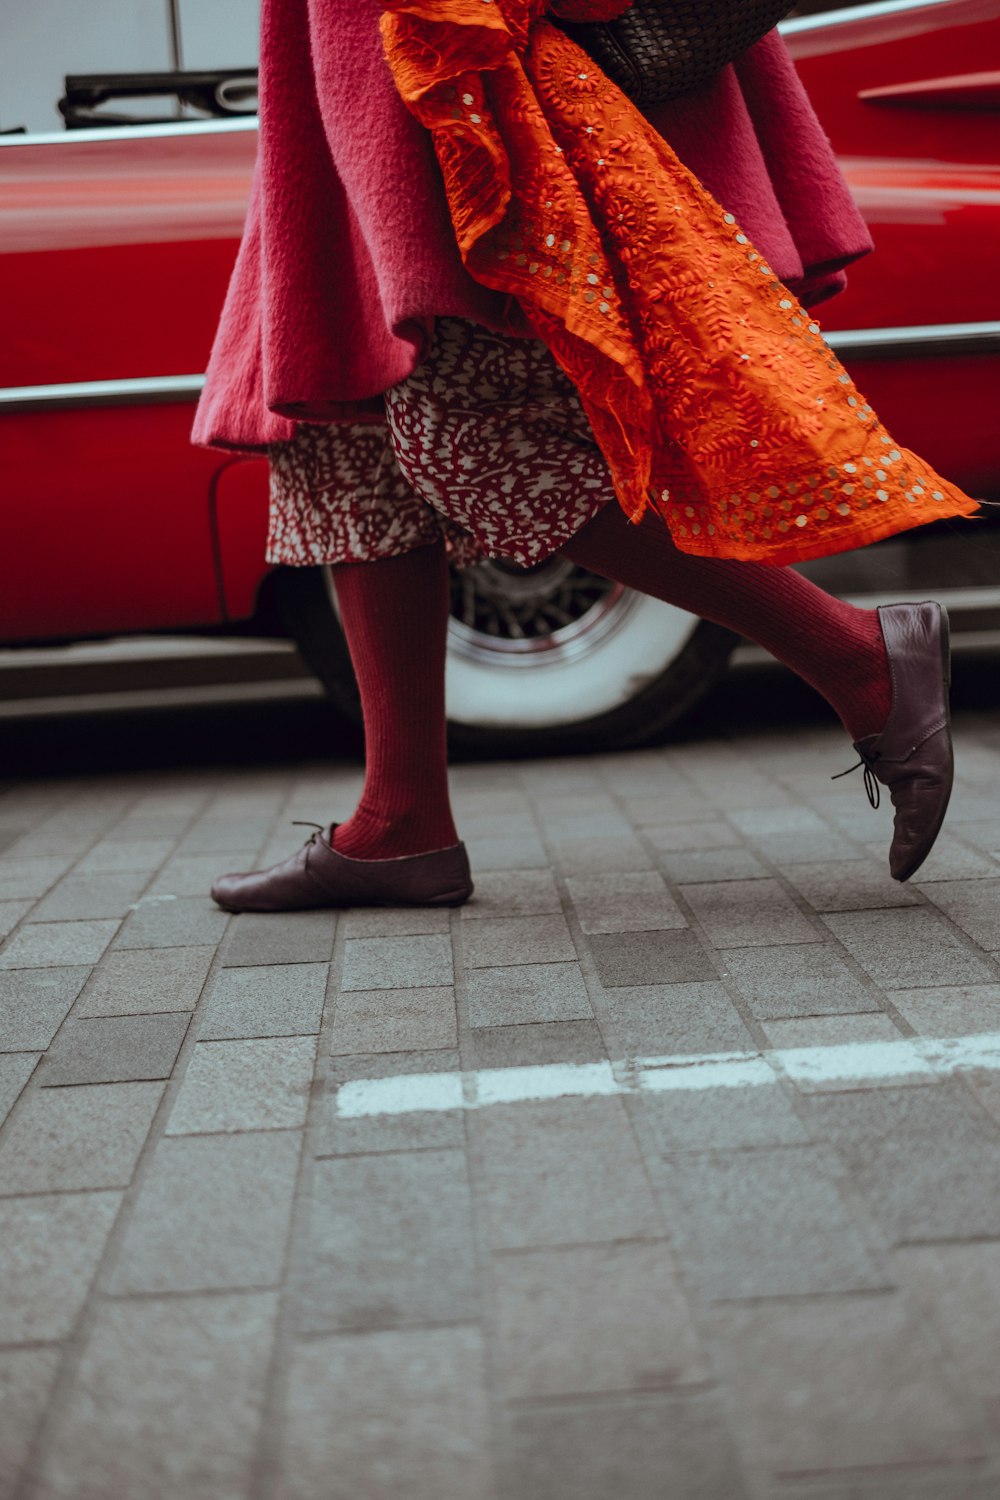 Foto de una persona caminando frente a un vehículo rojo